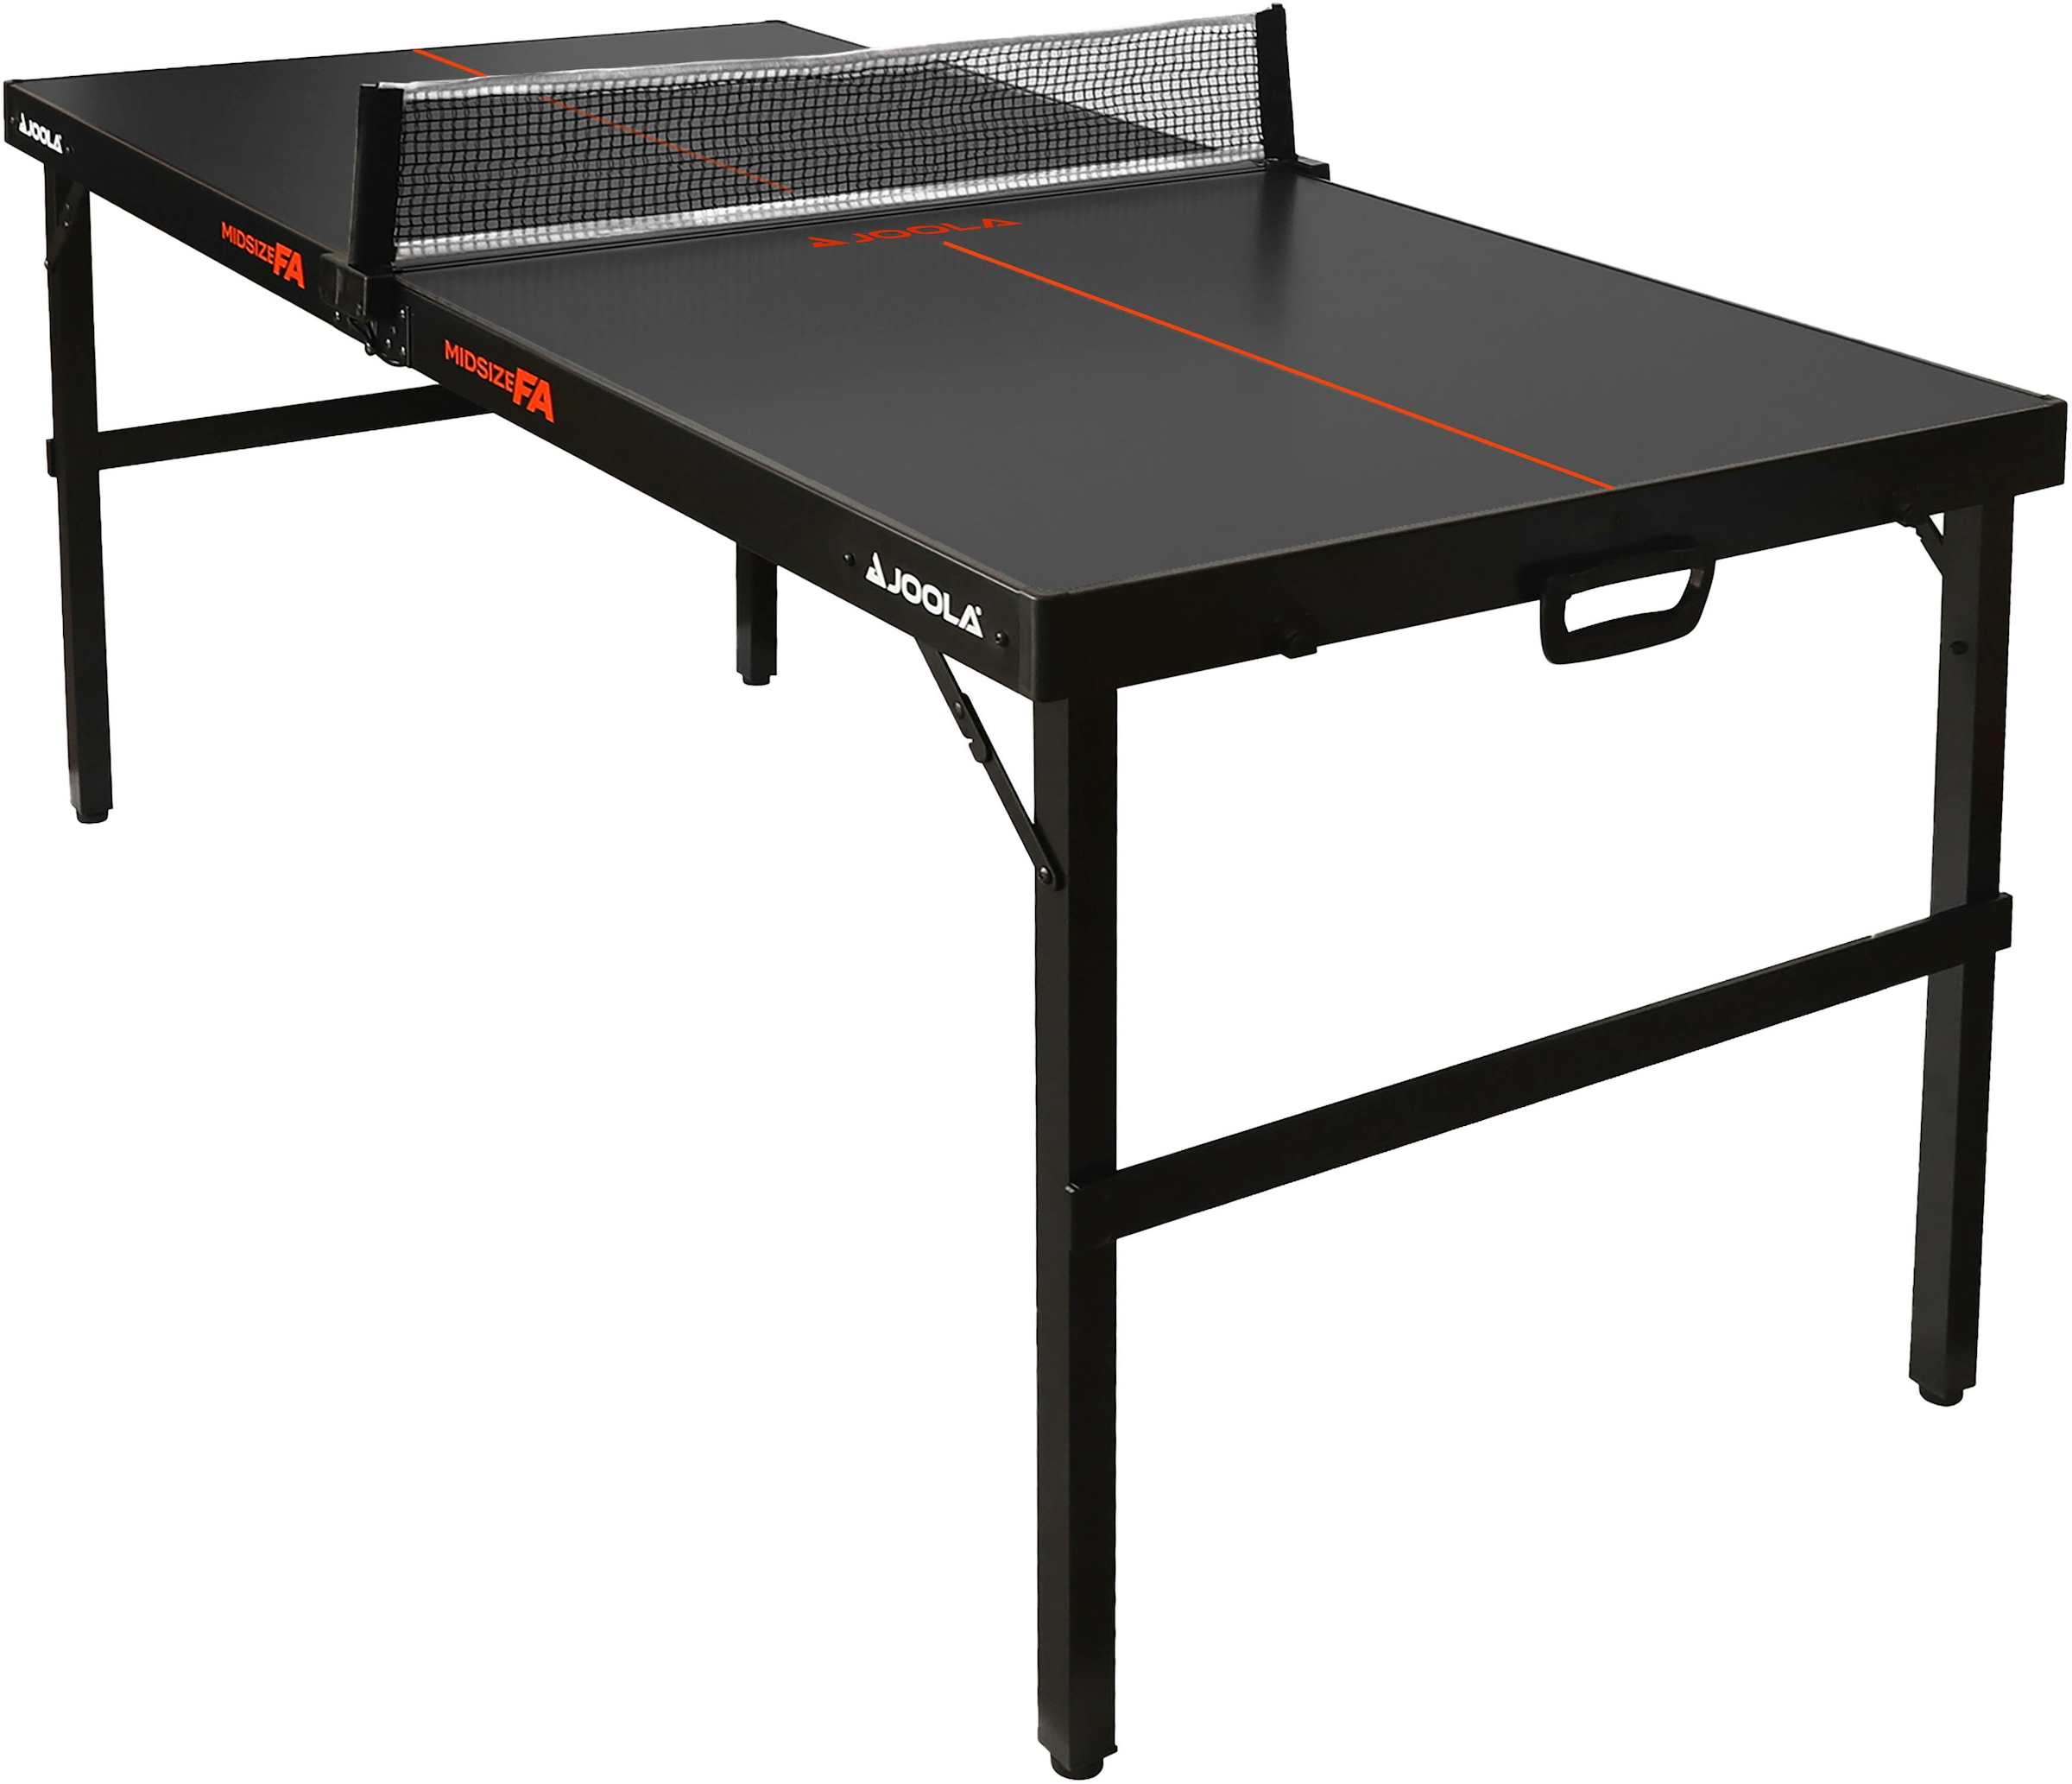 Joola Mini-Tischtennisplatte »Midsize FA«, Tischtennistisch im modernen Design inklusive Tischtennisnetz - 12 kg